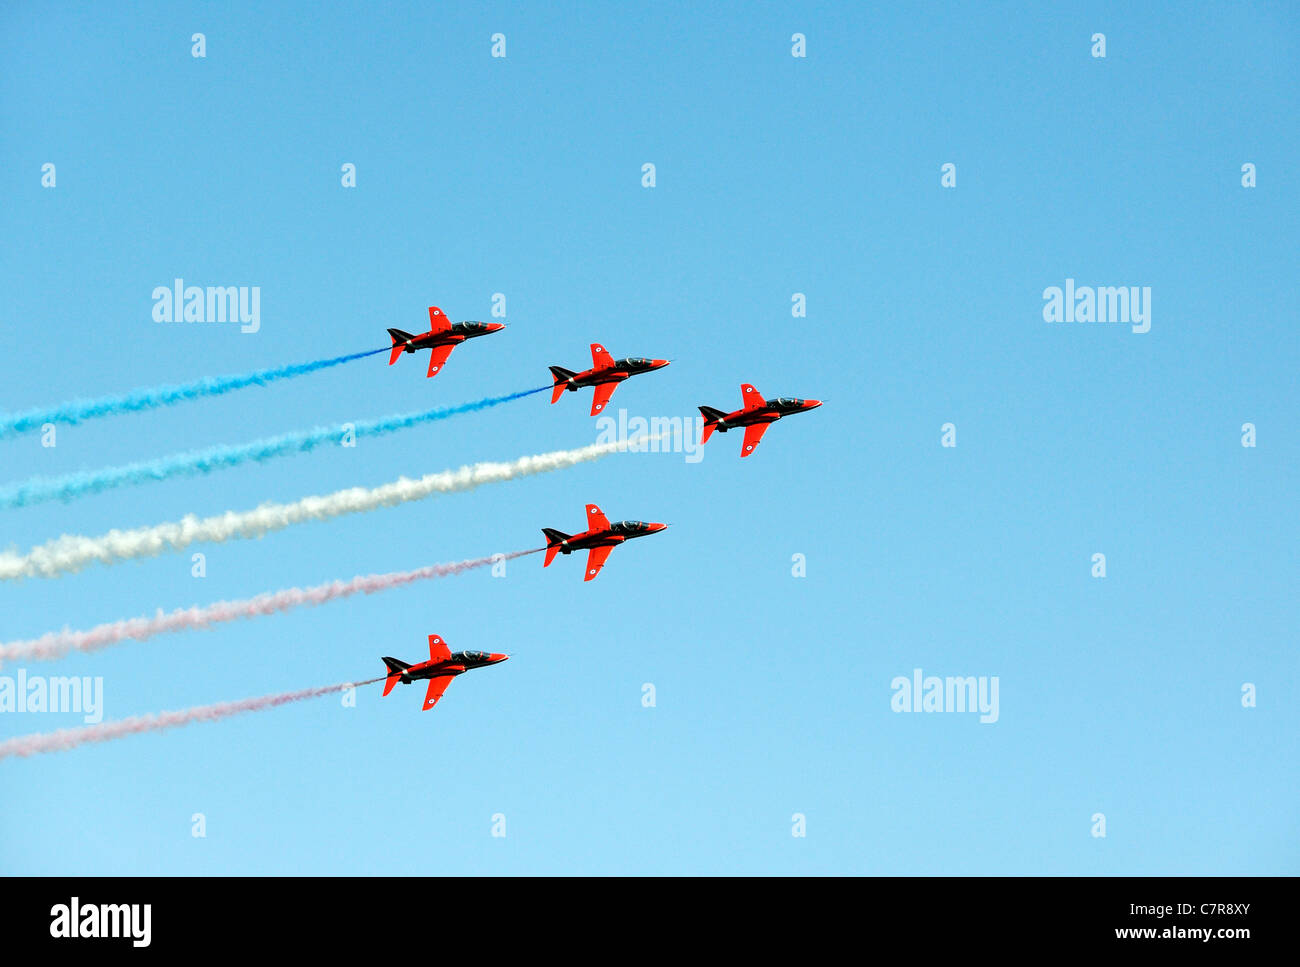 Des flèches rouges de l'équipe de voltige aérienne de la Royal Air Force. Formation de cinq BAE Hawk Rouge T1comme avion d'entraînement contre blue sky graphiques Banque D'Images